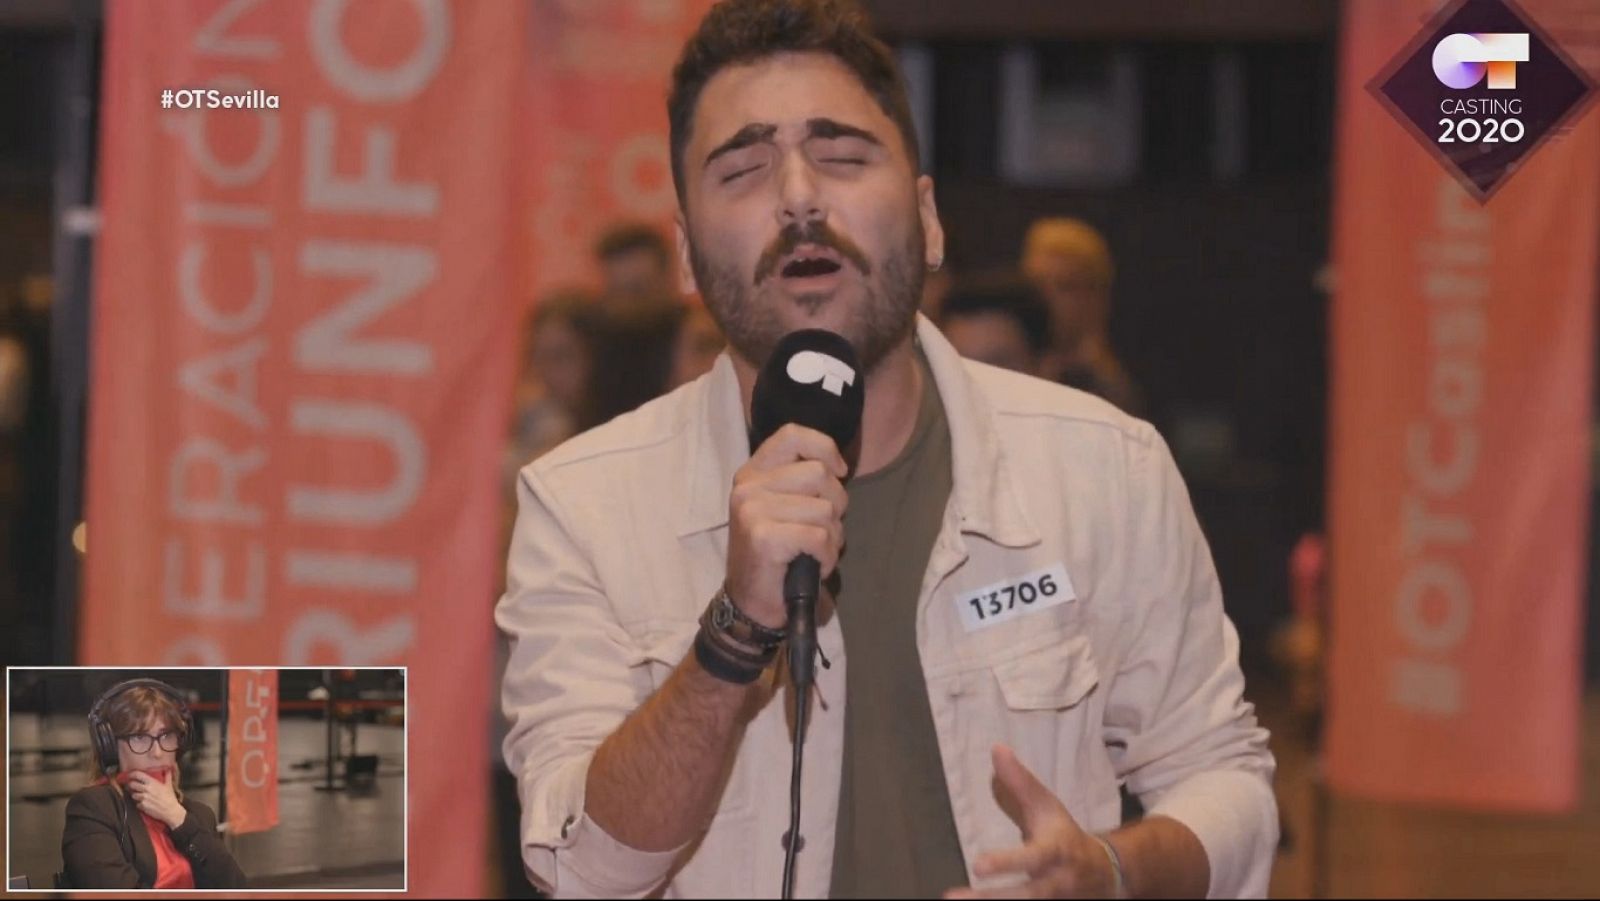 Este chico canta lo mismo Pablo López que Zaz en la Fase 1 del casting OT 2020 en Sevilla